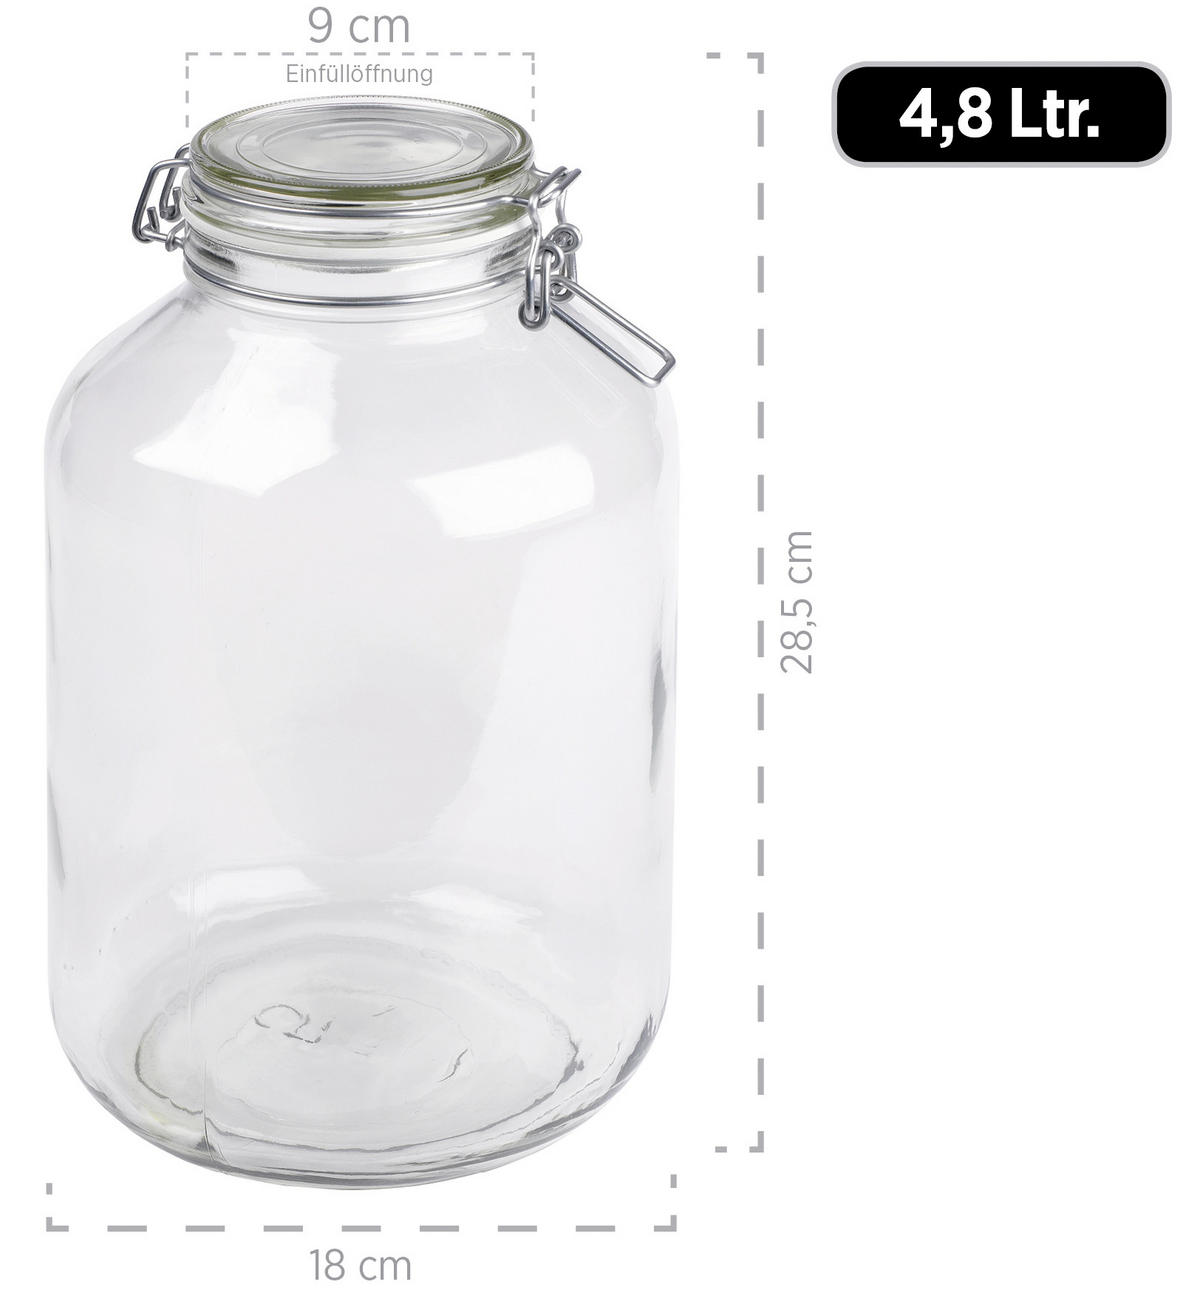 Einmachglas-Set 2-teilig 4,8 Liter online kaufen | Einmachgläser